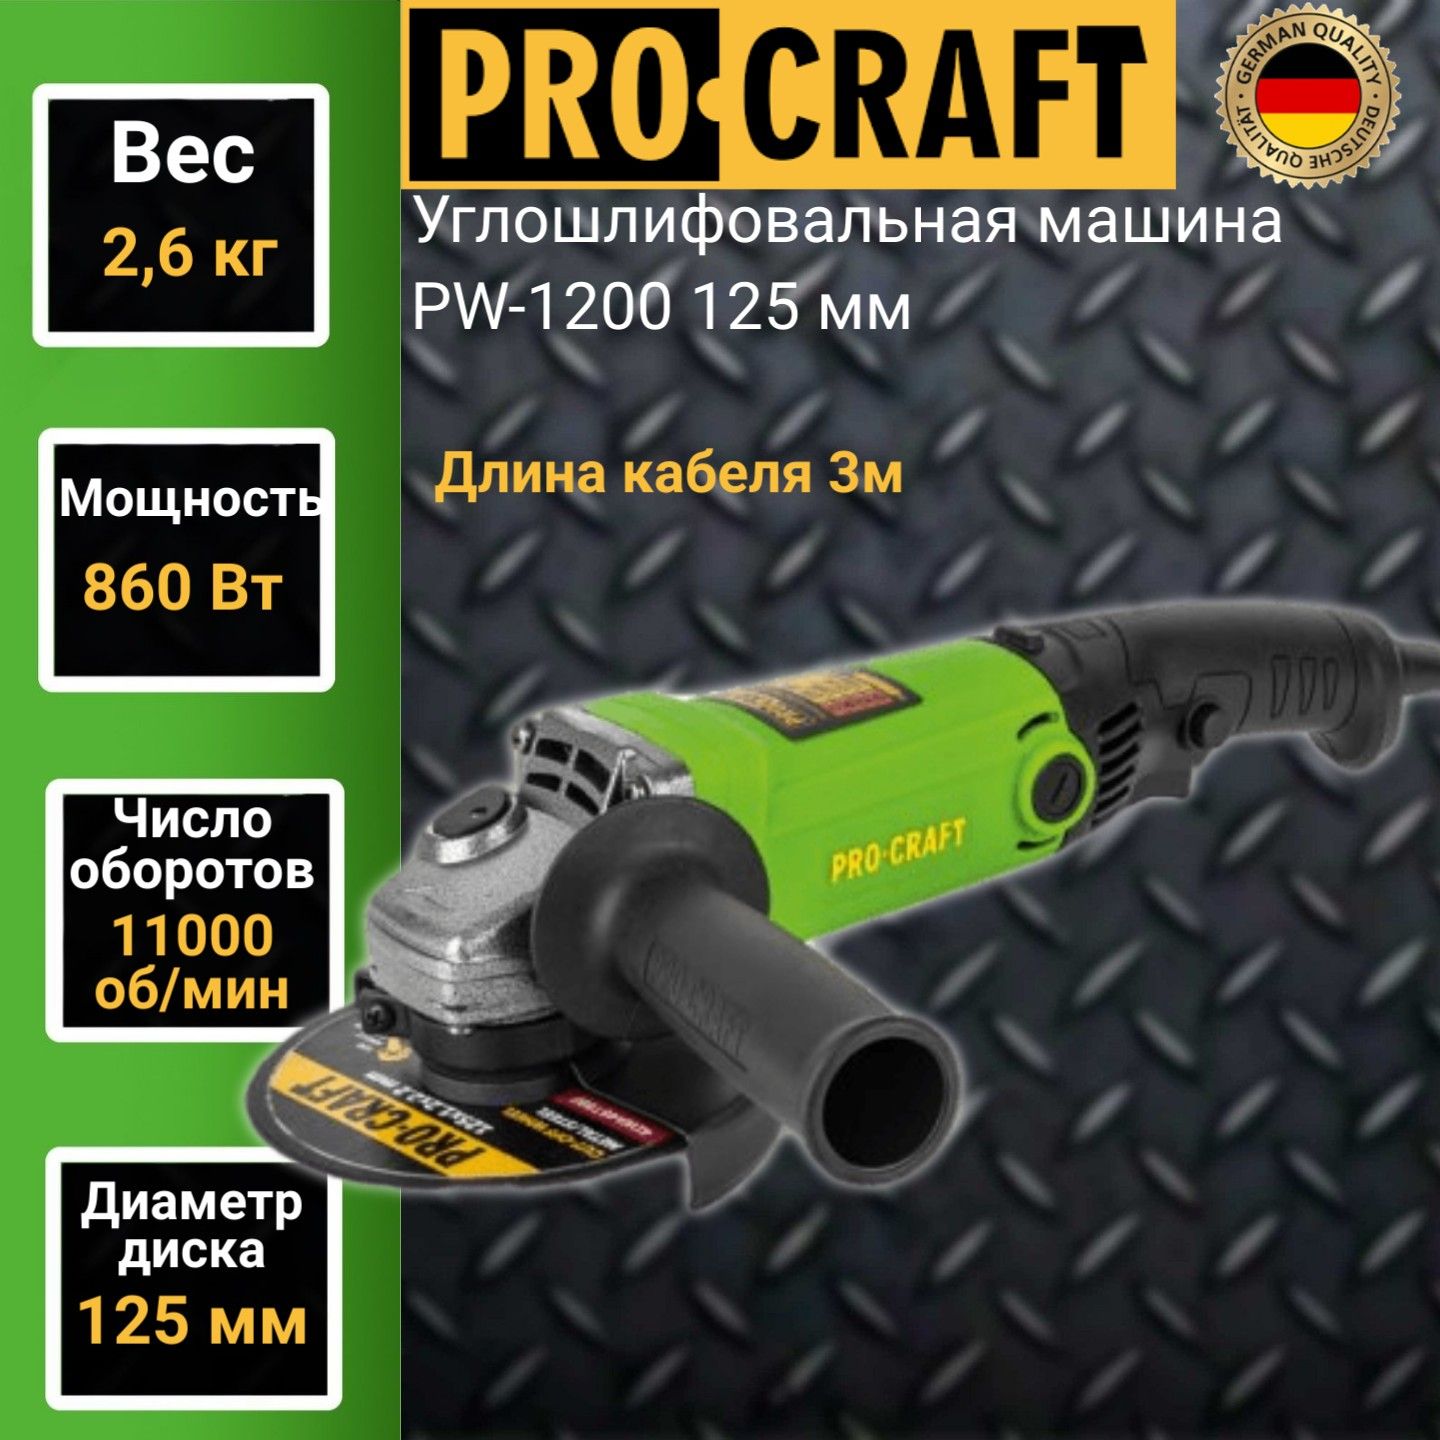 Углошлифовальная машина болгарка Procraft PW1200, 125мм круг, 860Вт, 11000об/мин машина углошлифовальная 750 вт 115 125мм kinpow